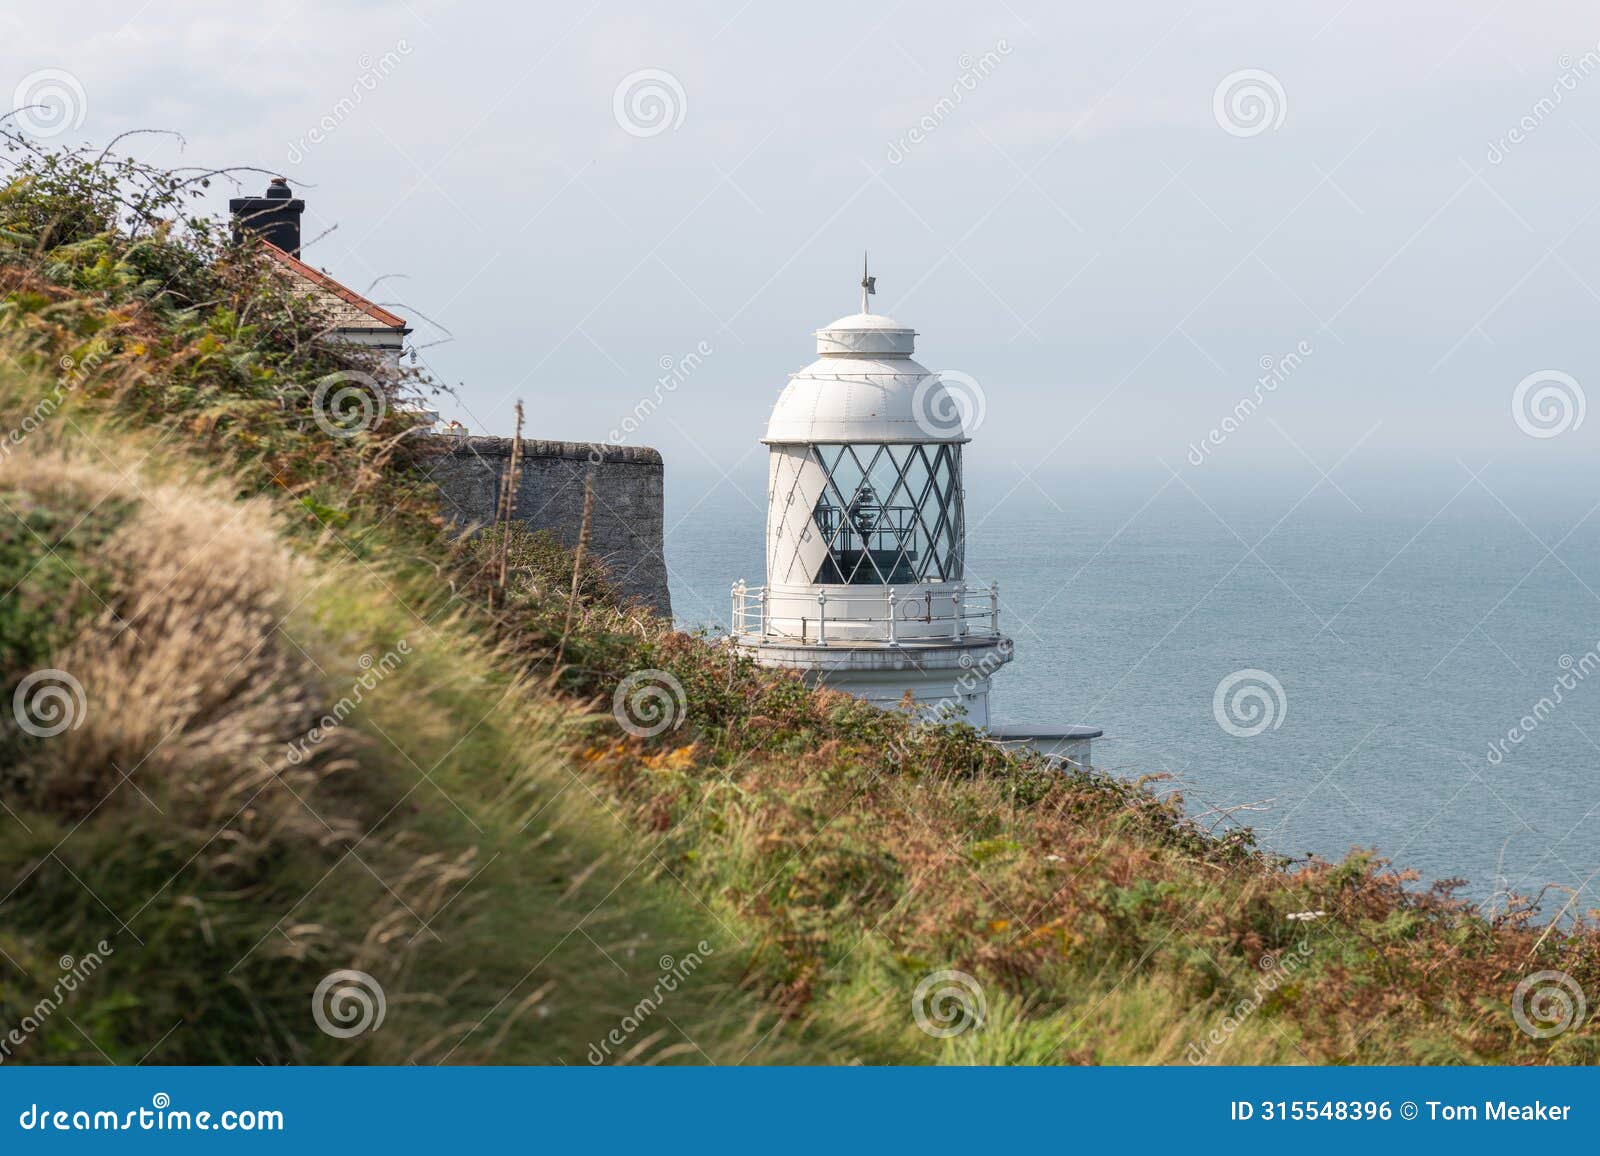 foreland lighthouse